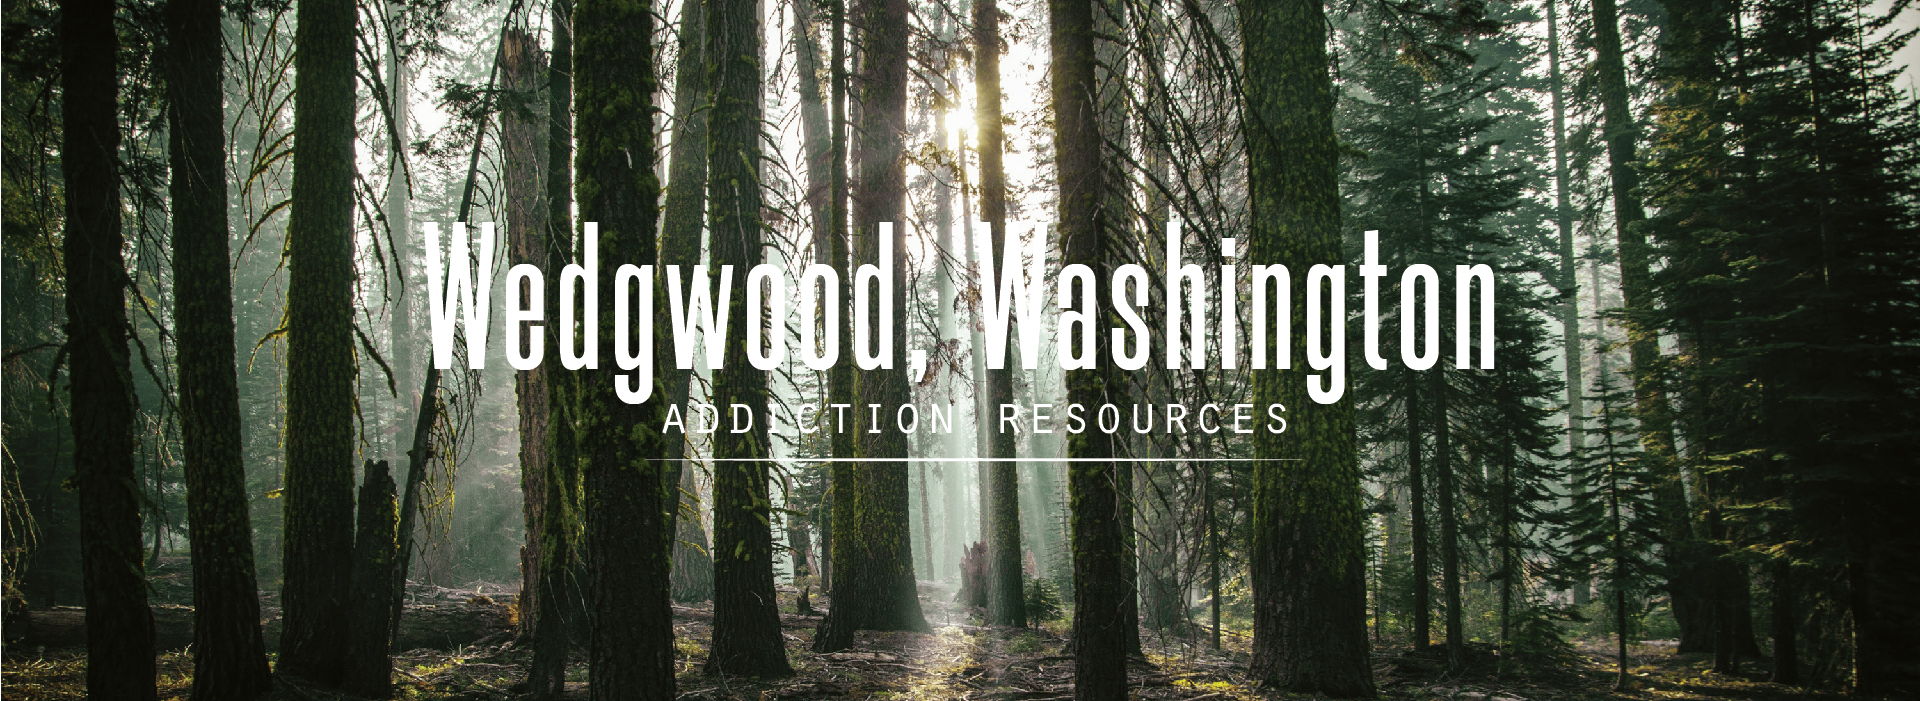 Wedgwood, Washington Addiction Resources